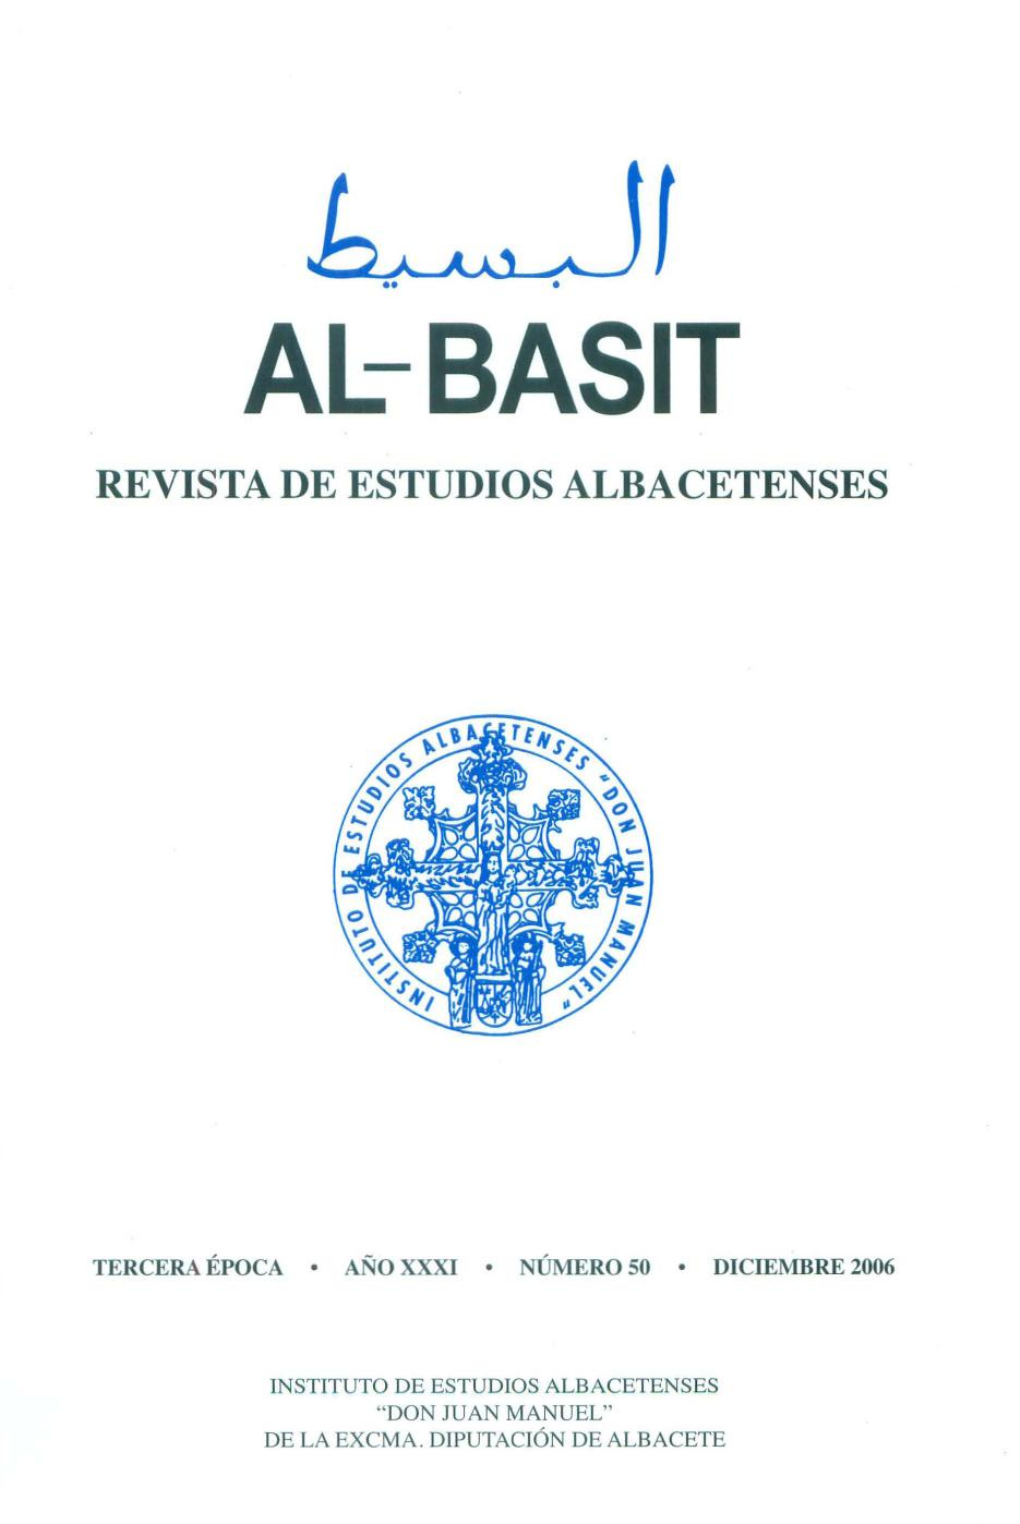 Al-Basit Revista De Estudios Albacetenses